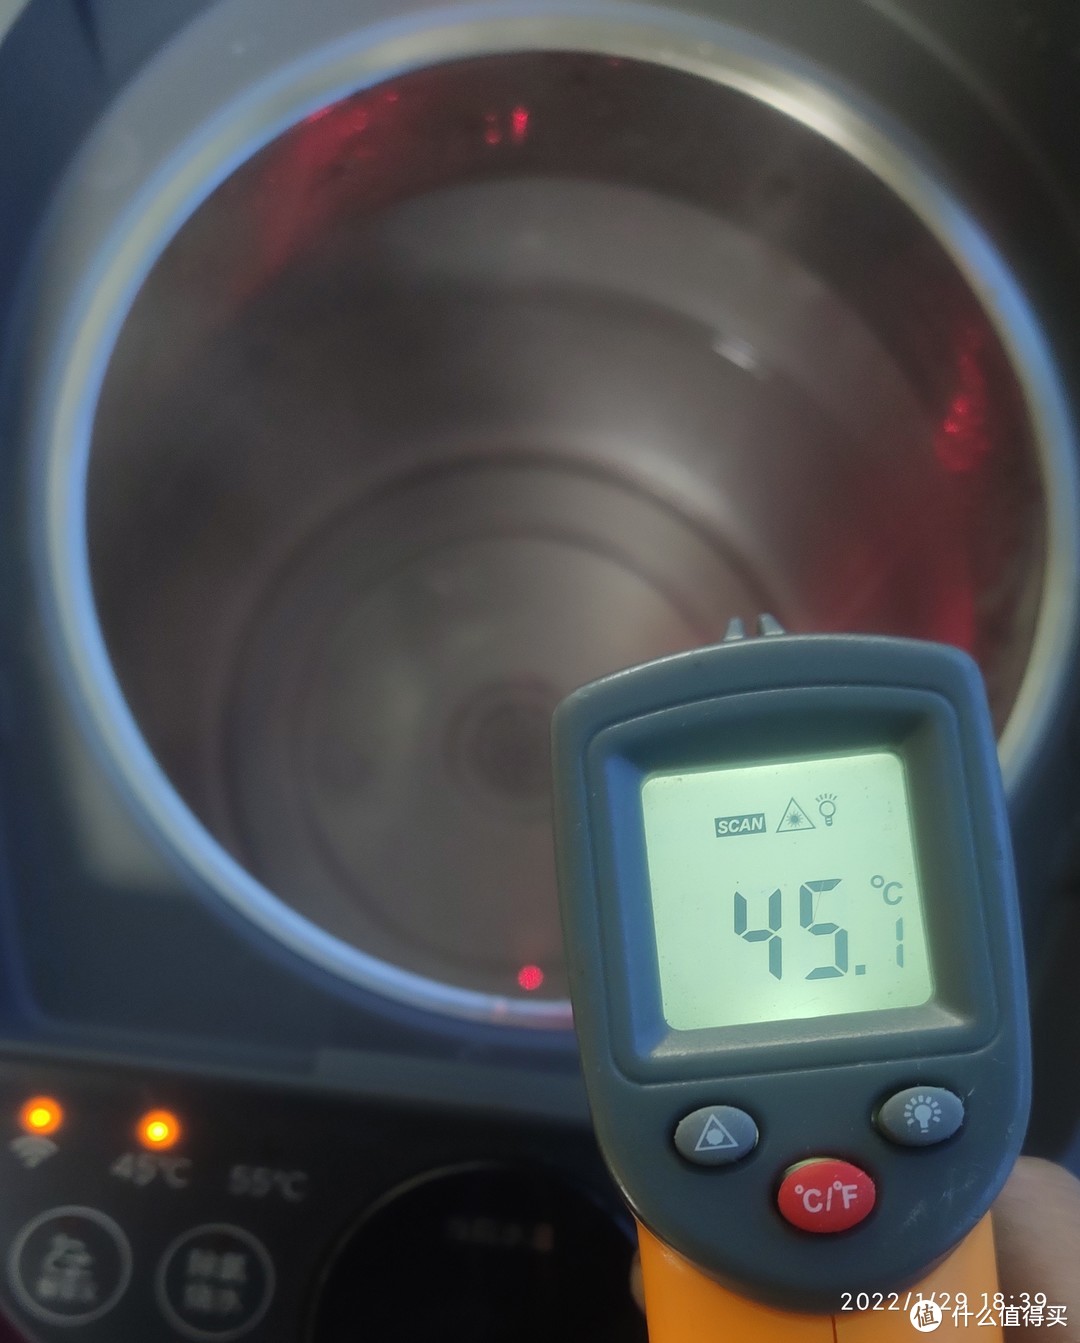 为了验证美的电热水瓶水温温度是否准确，我用公司的测温枪复核后认为是合格的！